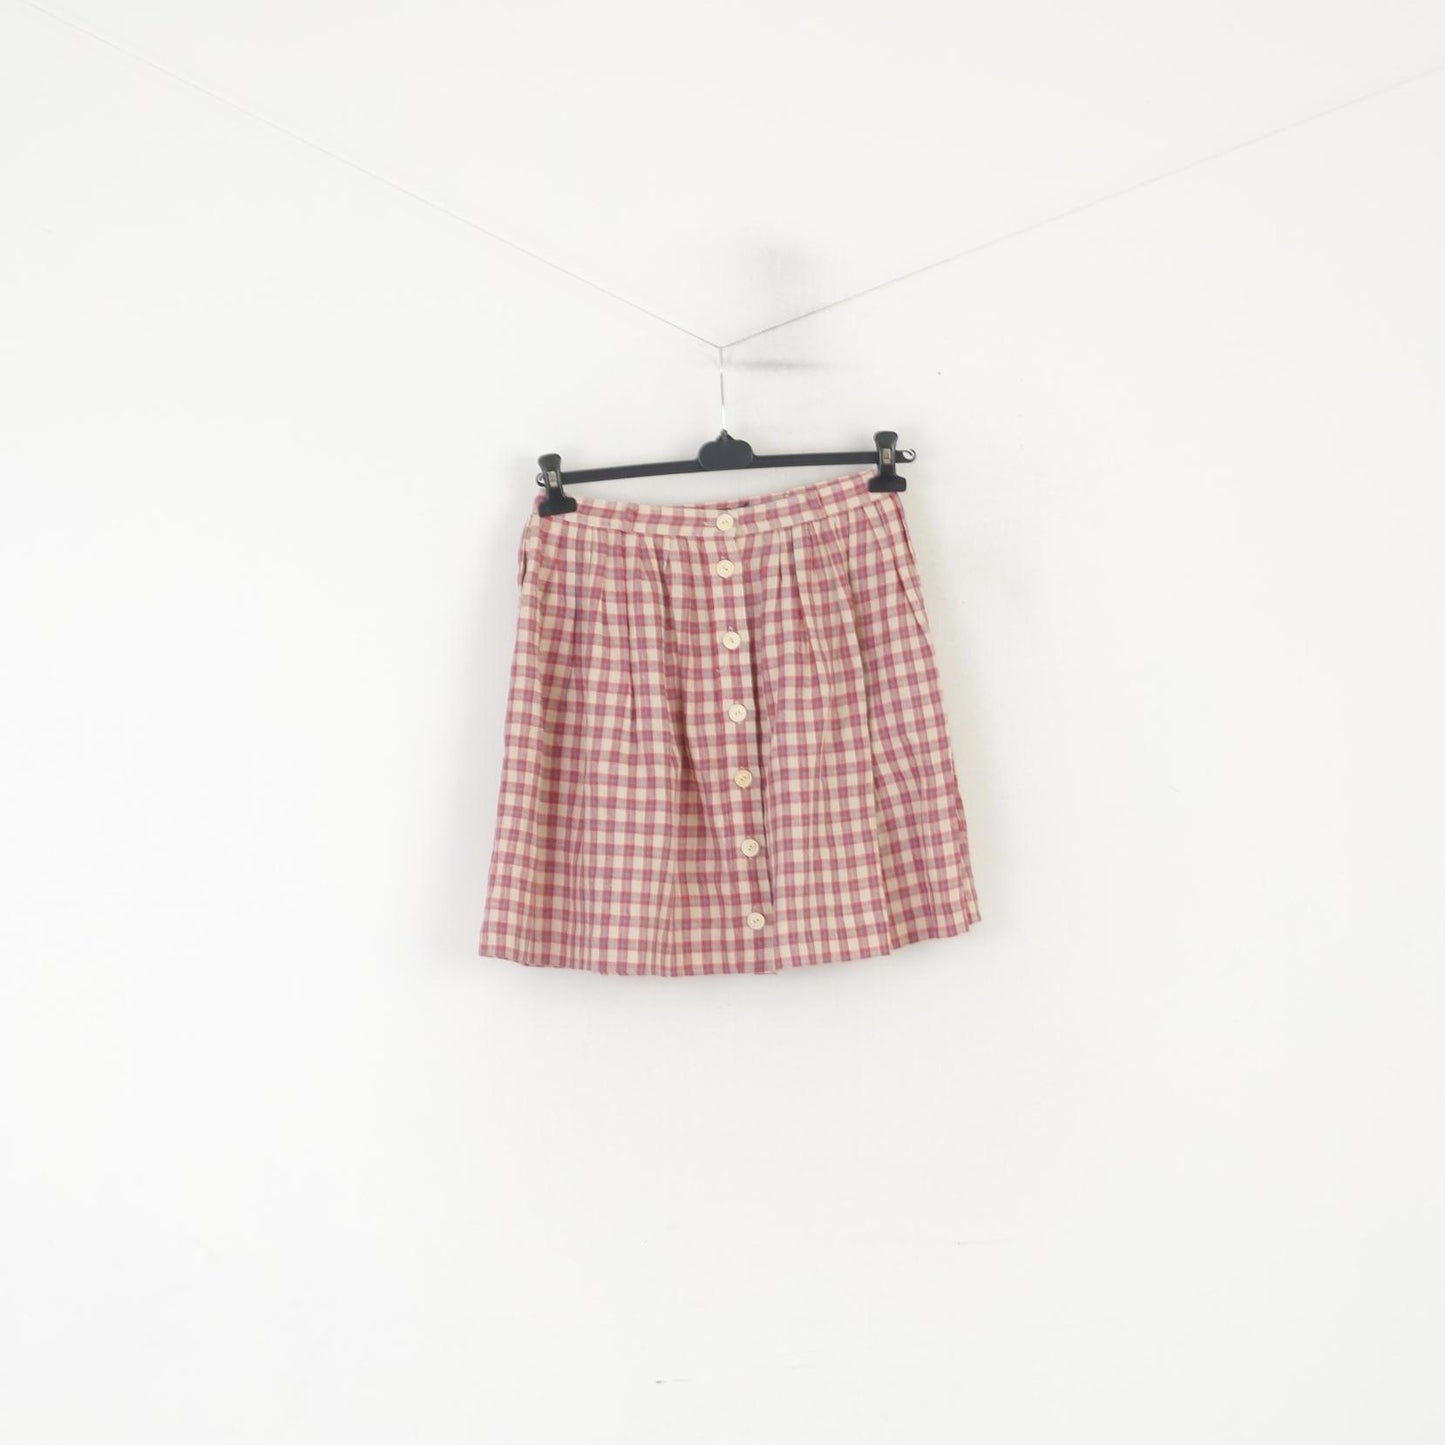 Ralph Lauren Women 6 S Mini Skirt Beige Red Check 100% Linen Buttoned